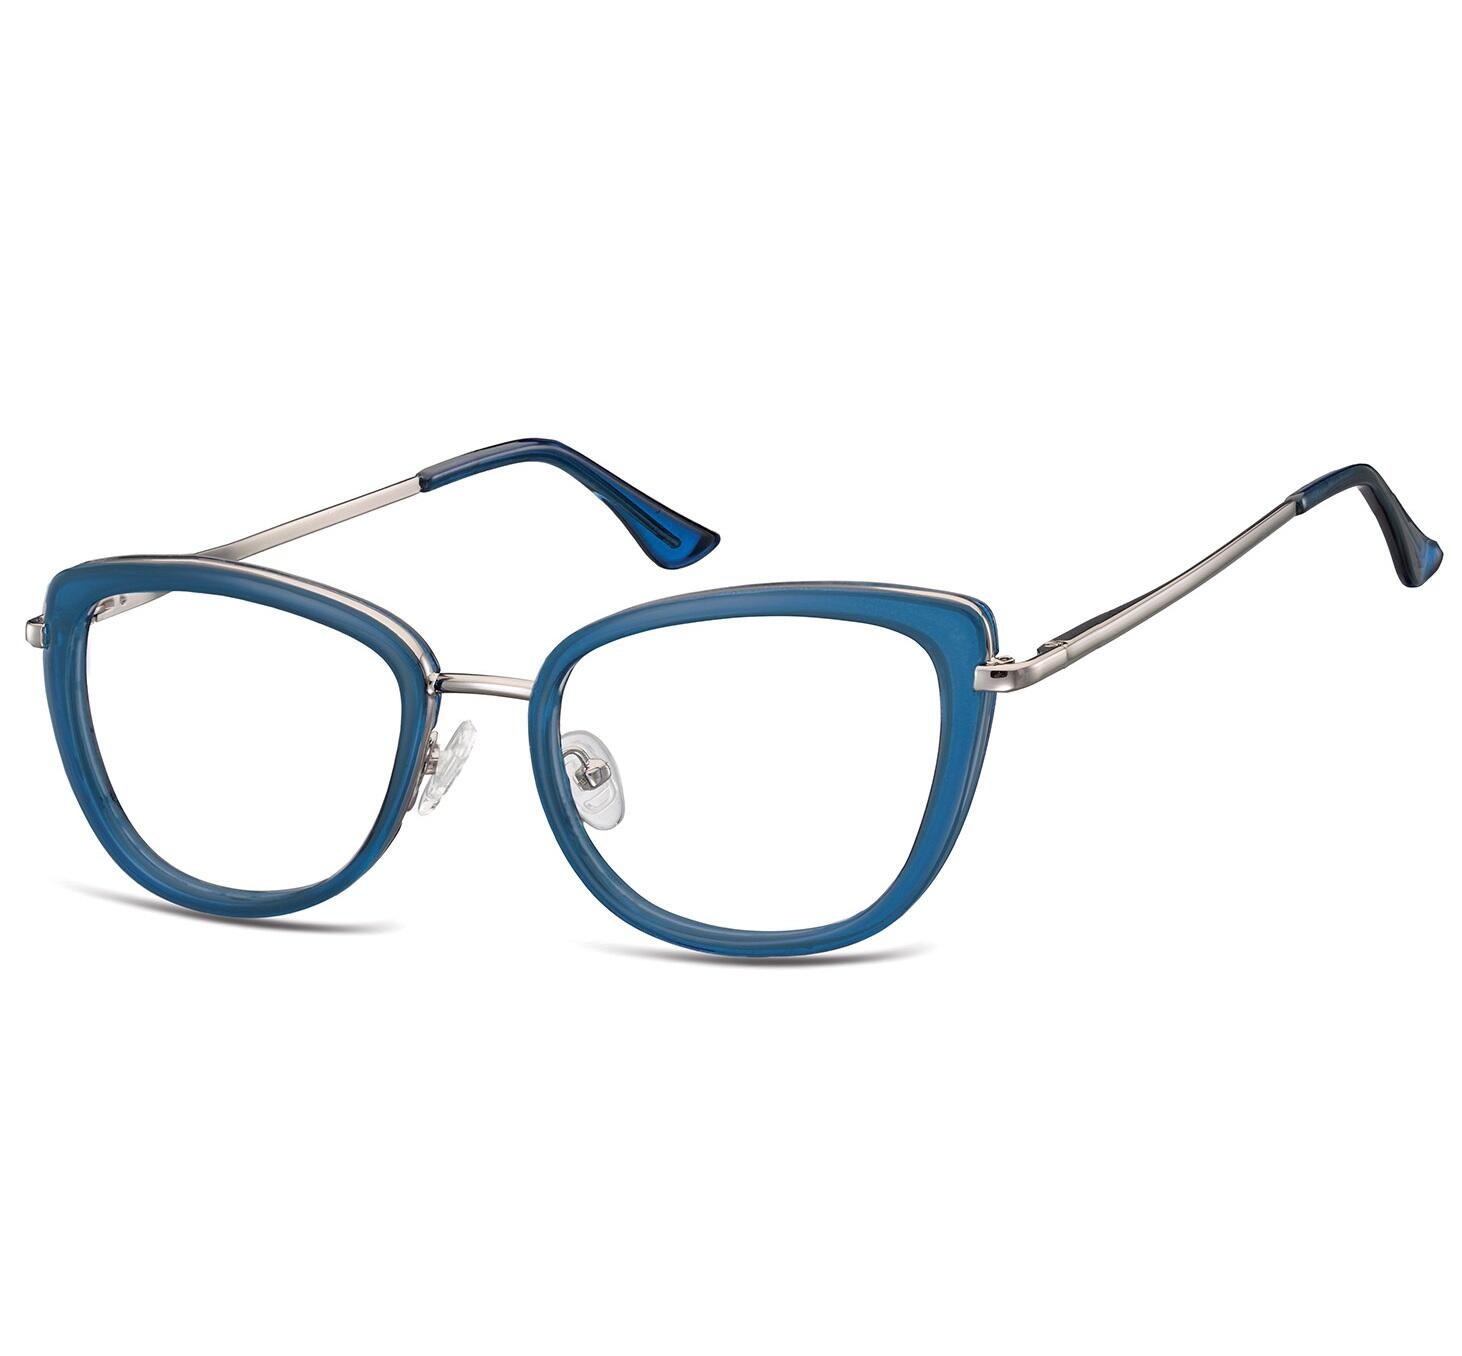 Okulary oprawki korekcyjne kocie oczy zerówki Sunoptic flex MTR-99G niebiesko-srebrne